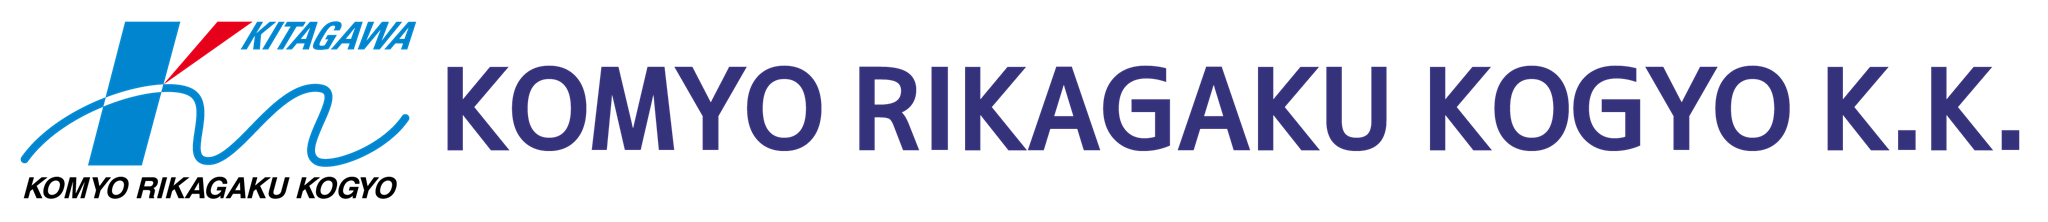 Kitagawa Logo Header